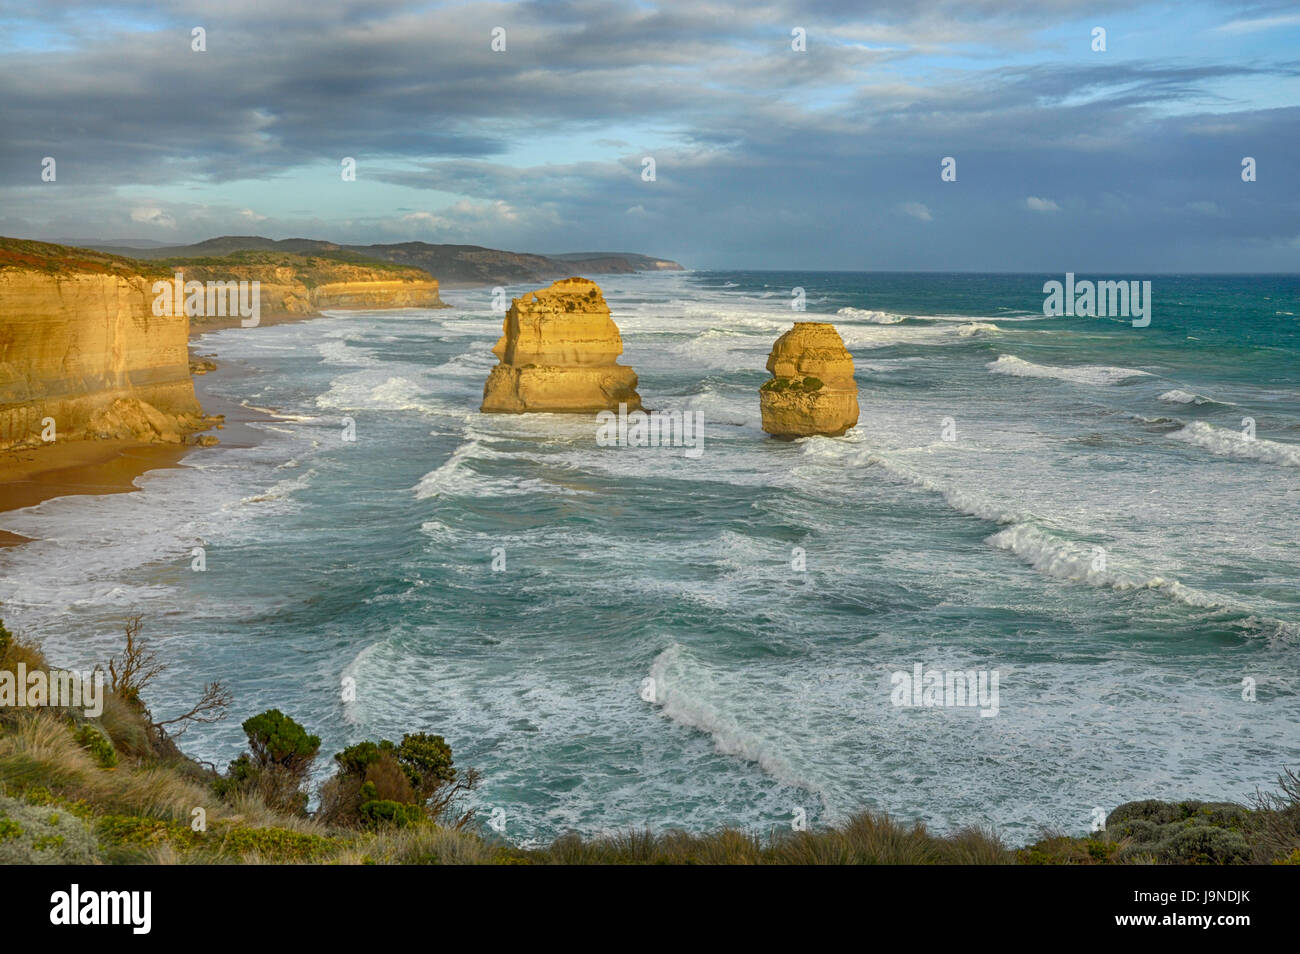 L'Australie, Victoria, Great Ocean Road, 12 apôtres, au sud de Melbourne une côte géologique particulière Banque D'Images